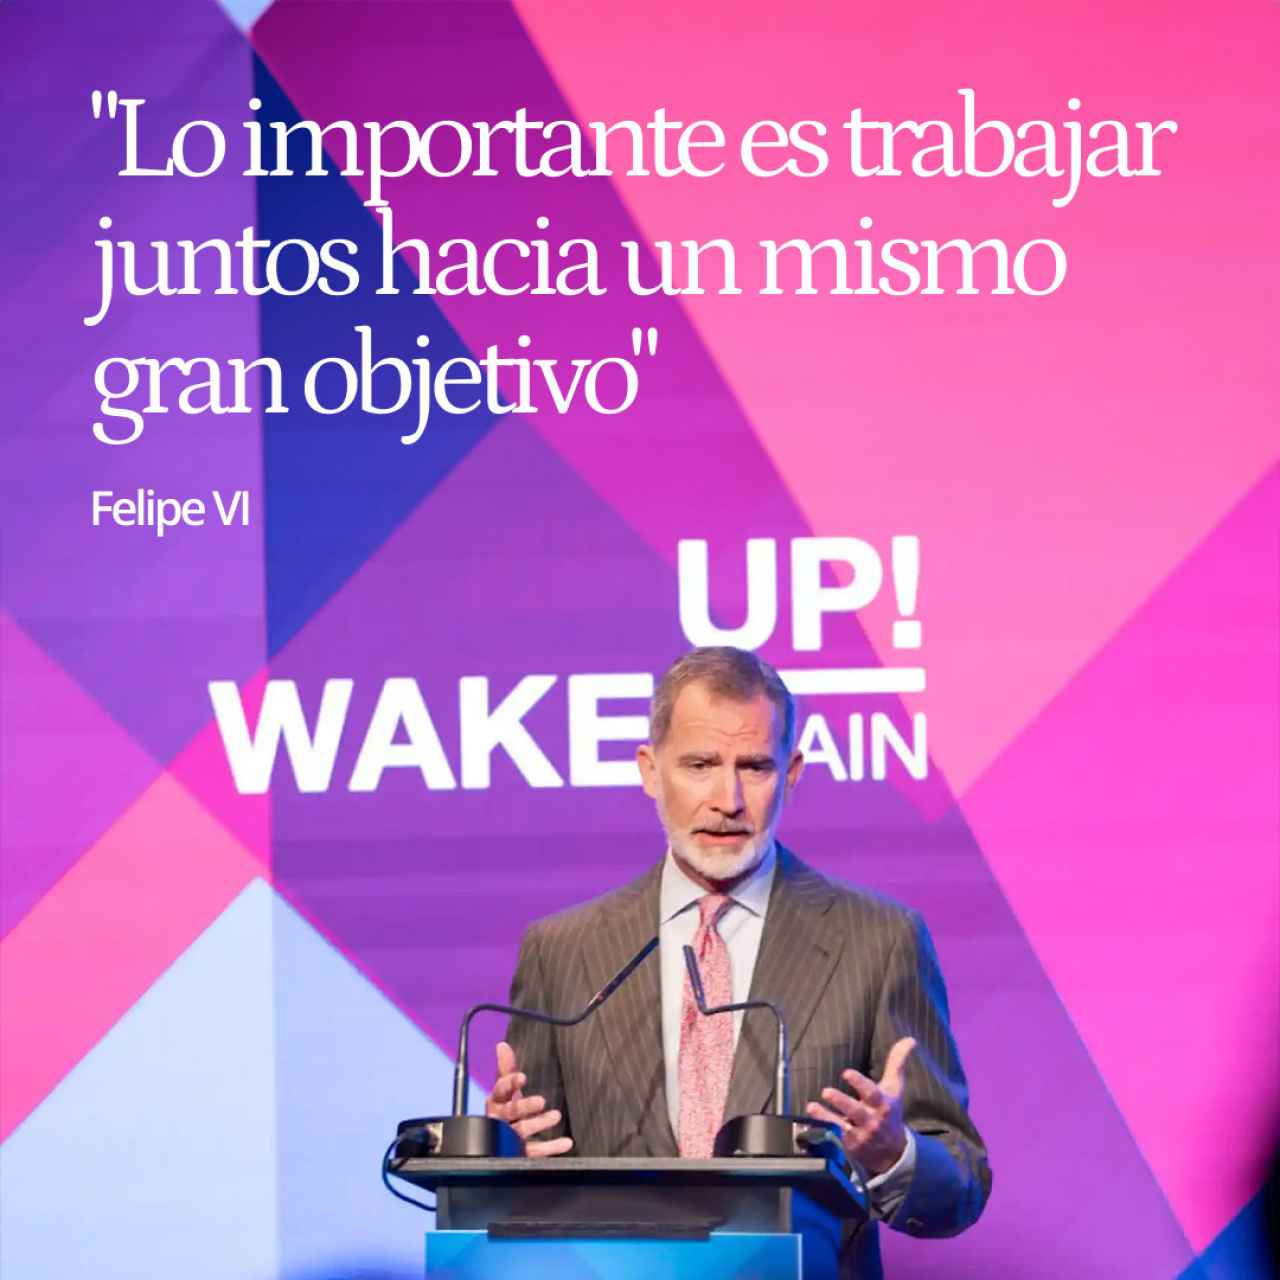 Felipe VI en la apertura de Wake Up: "Lo importante es trabajar juntos hacia un mismo gran objetivo"